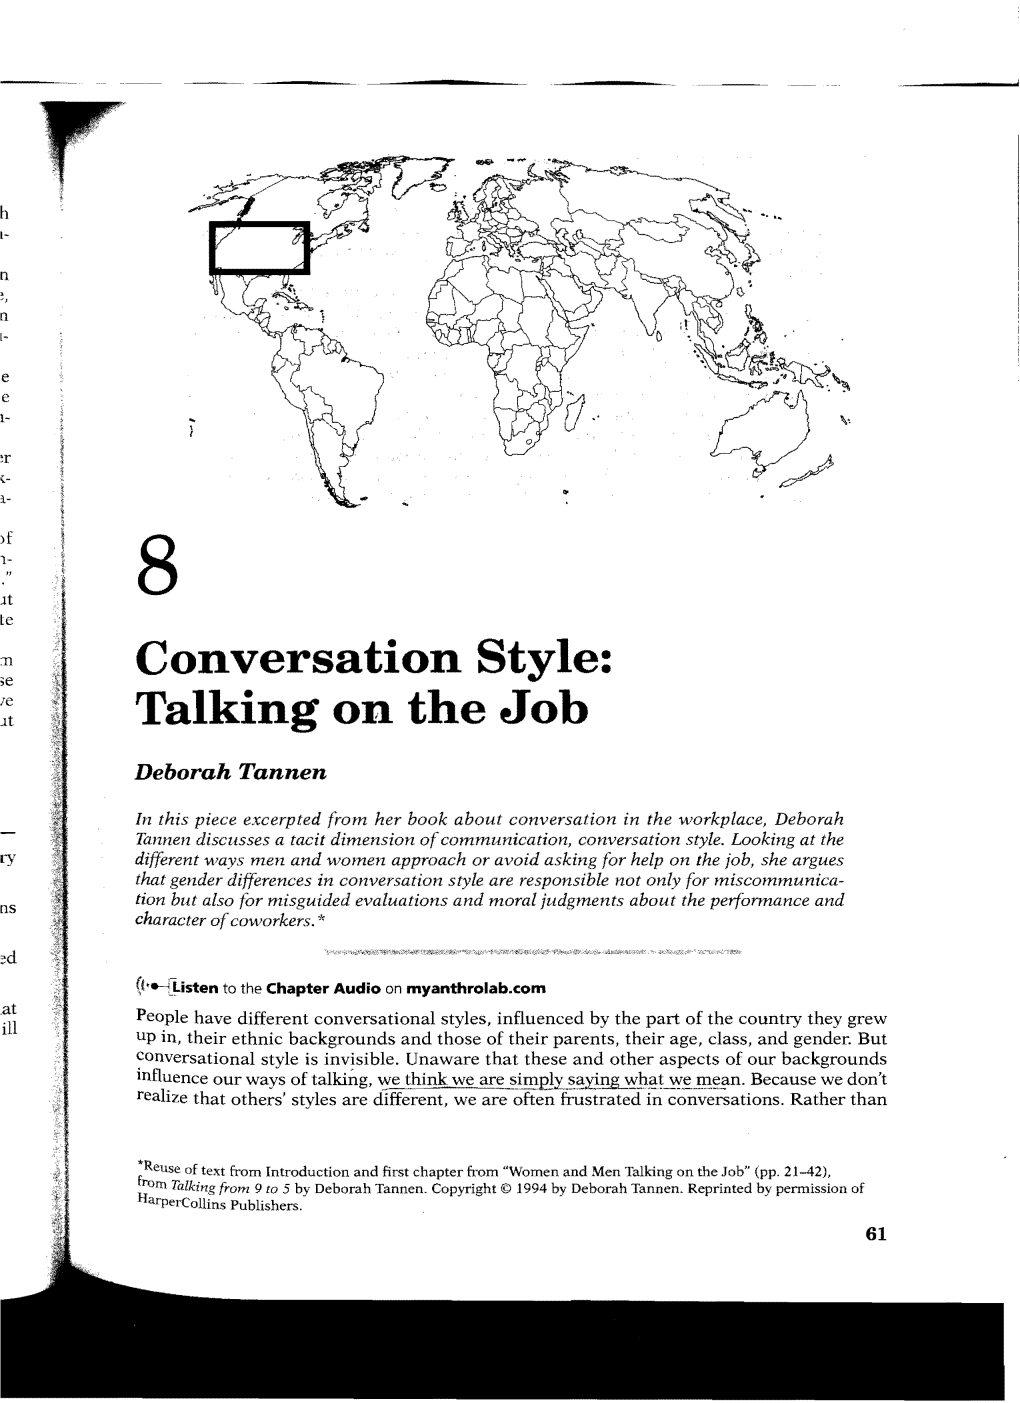 Conversation Style: Talking on the Job 63